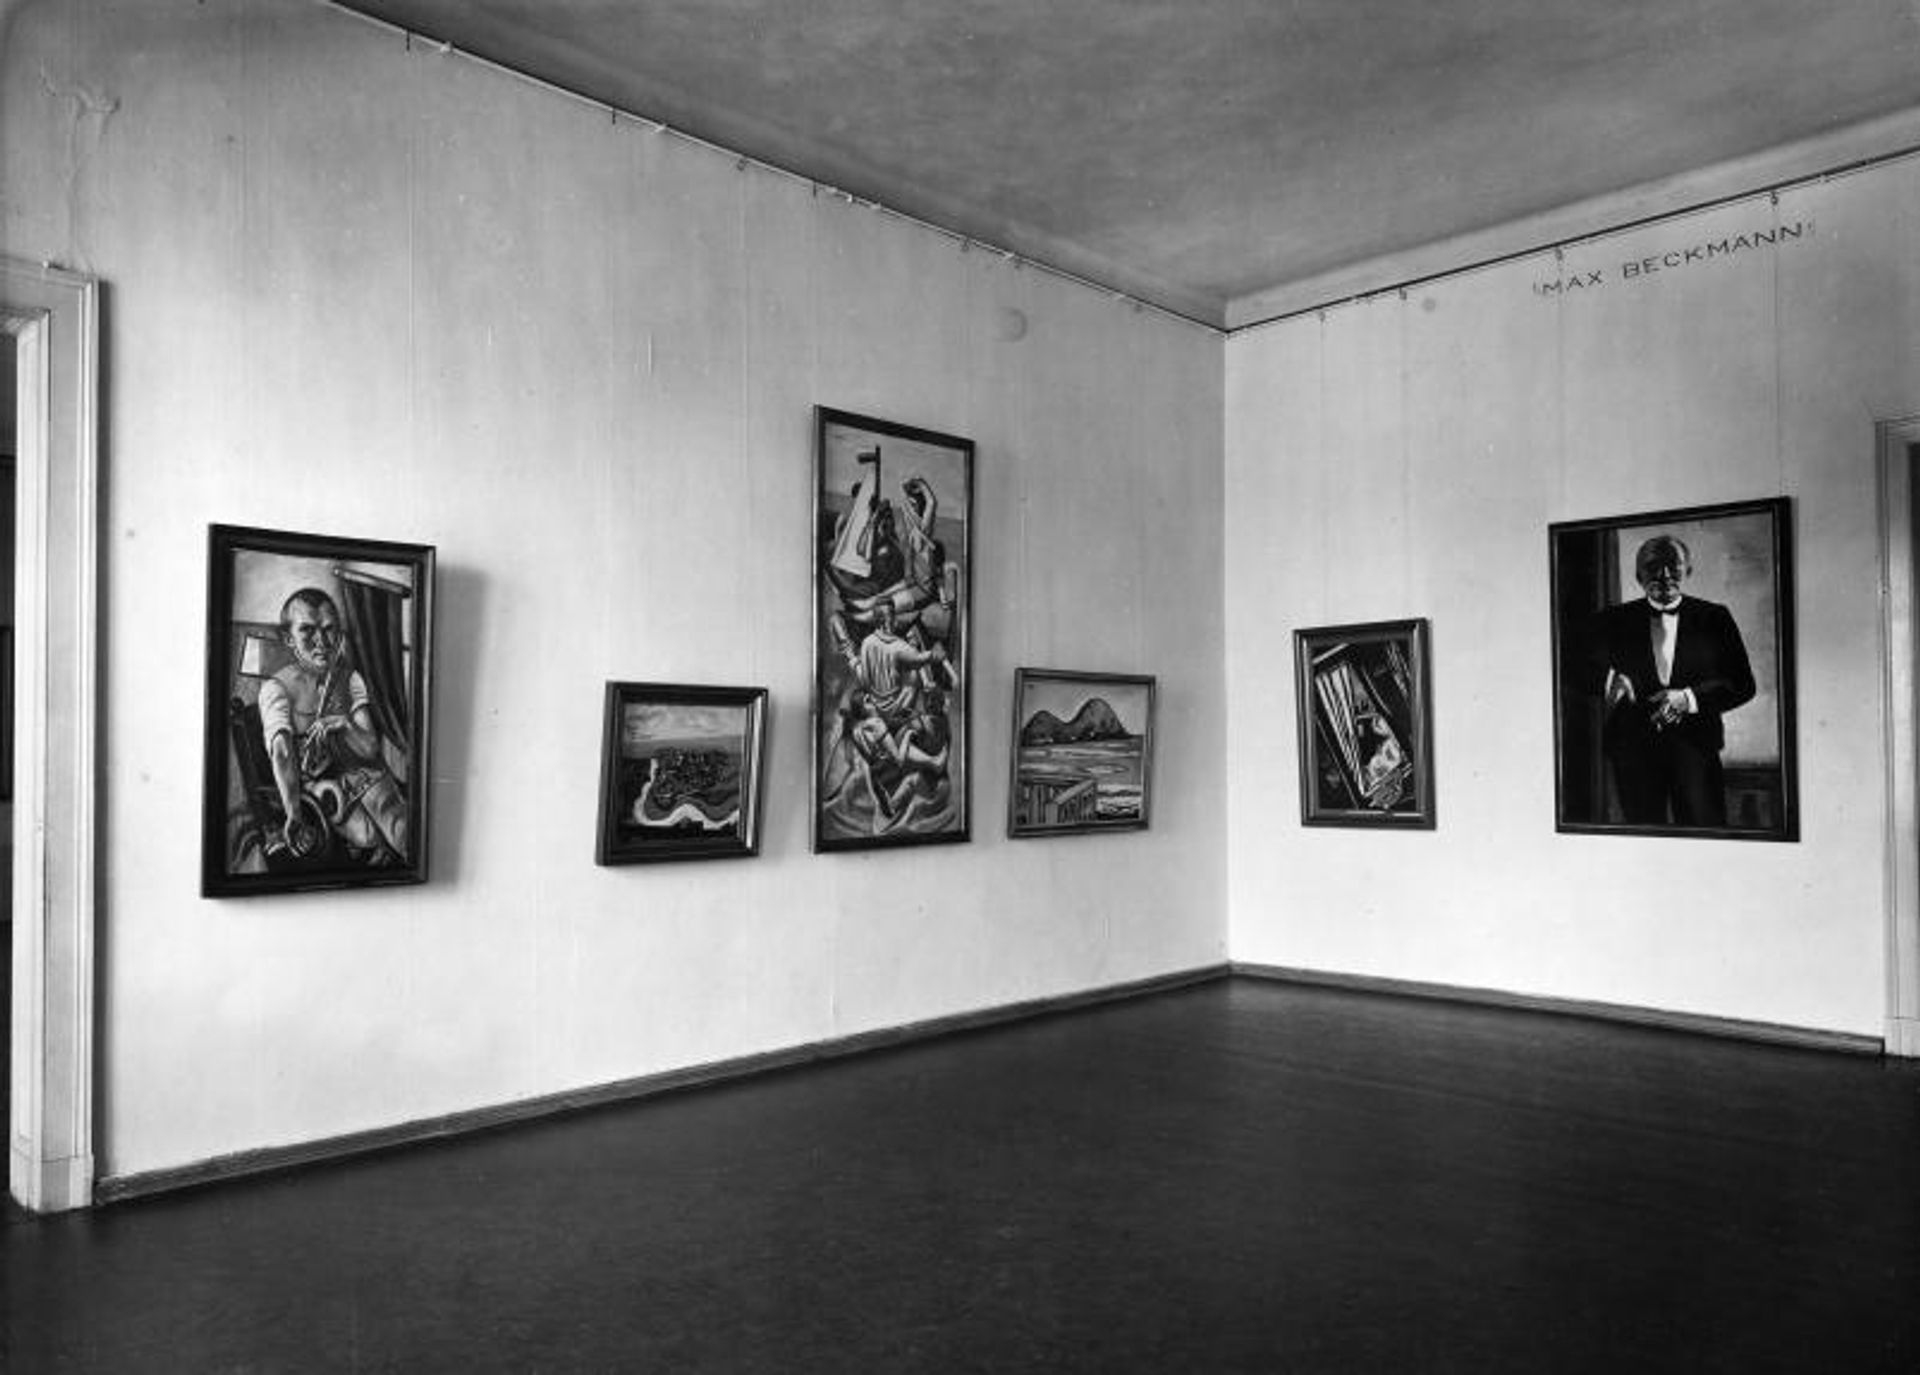 The Max Beckmann hall at the Nationalgalerie in the former Kronprinzenpalais, 1932/33 Staatliche Museen zu Berlin, Zentralarchiv; VG Bild-Kunst, Bonn, 2018